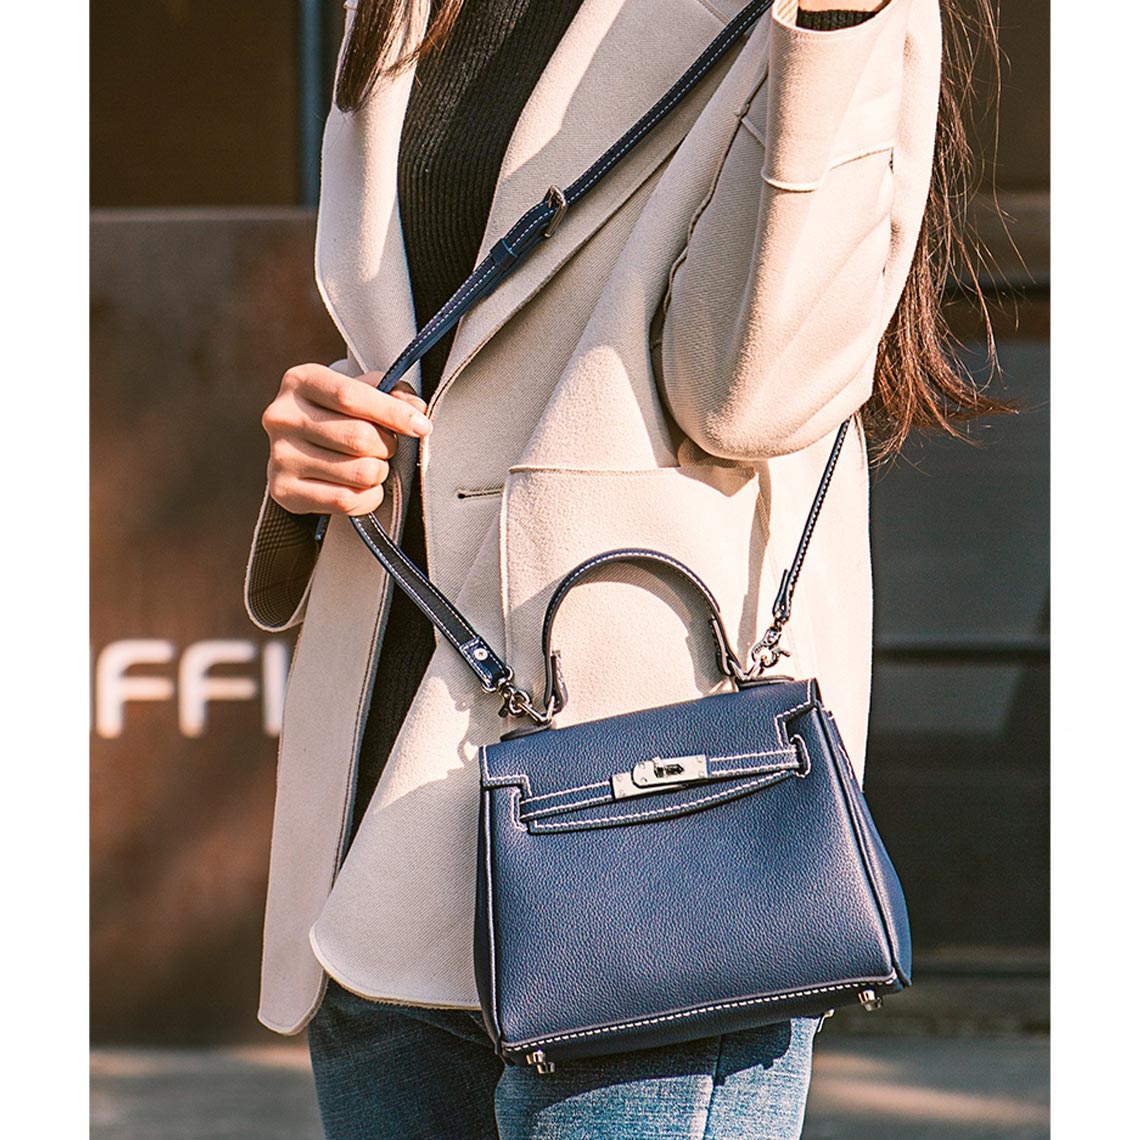 POPSEWING Leather Kelly Shoulder Handbag DIY Kit for Female Gift, Women's, Size: 11.0 in, Blue